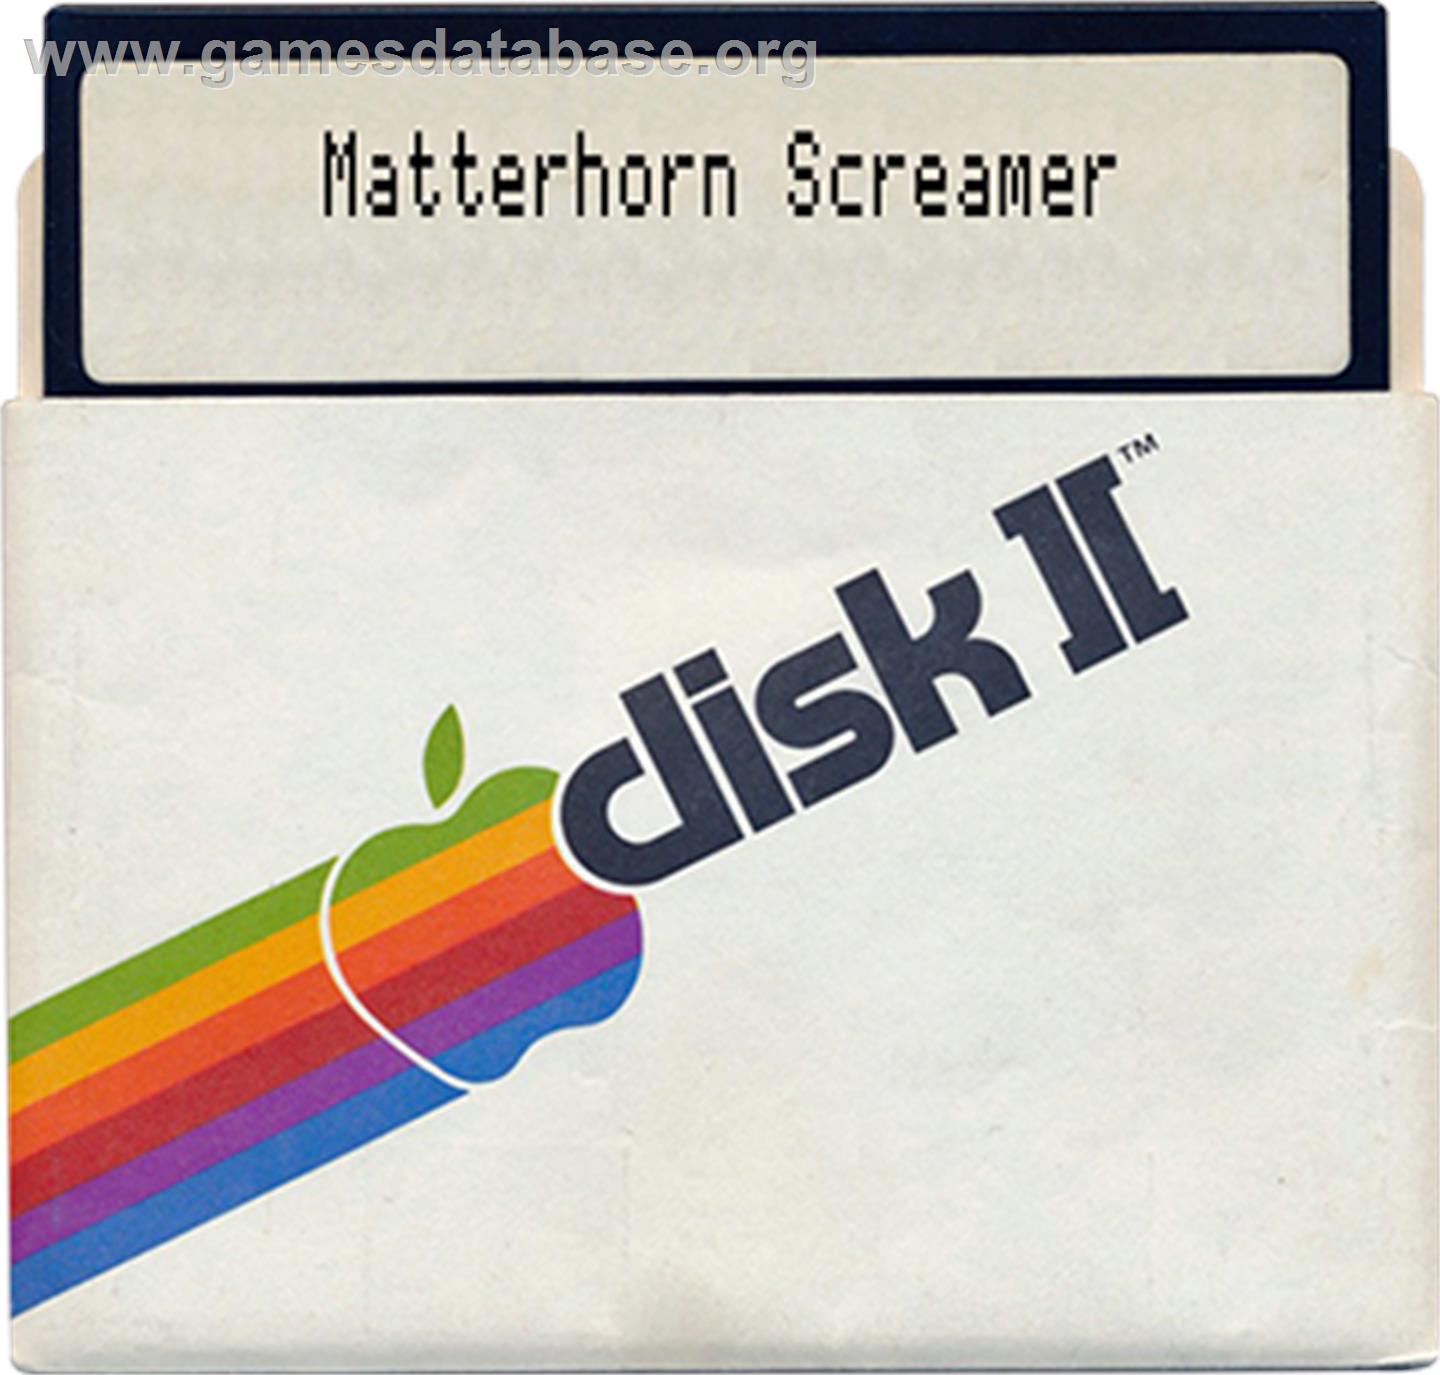 Matterhorn Screamer - Apple II - Artwork - Disc